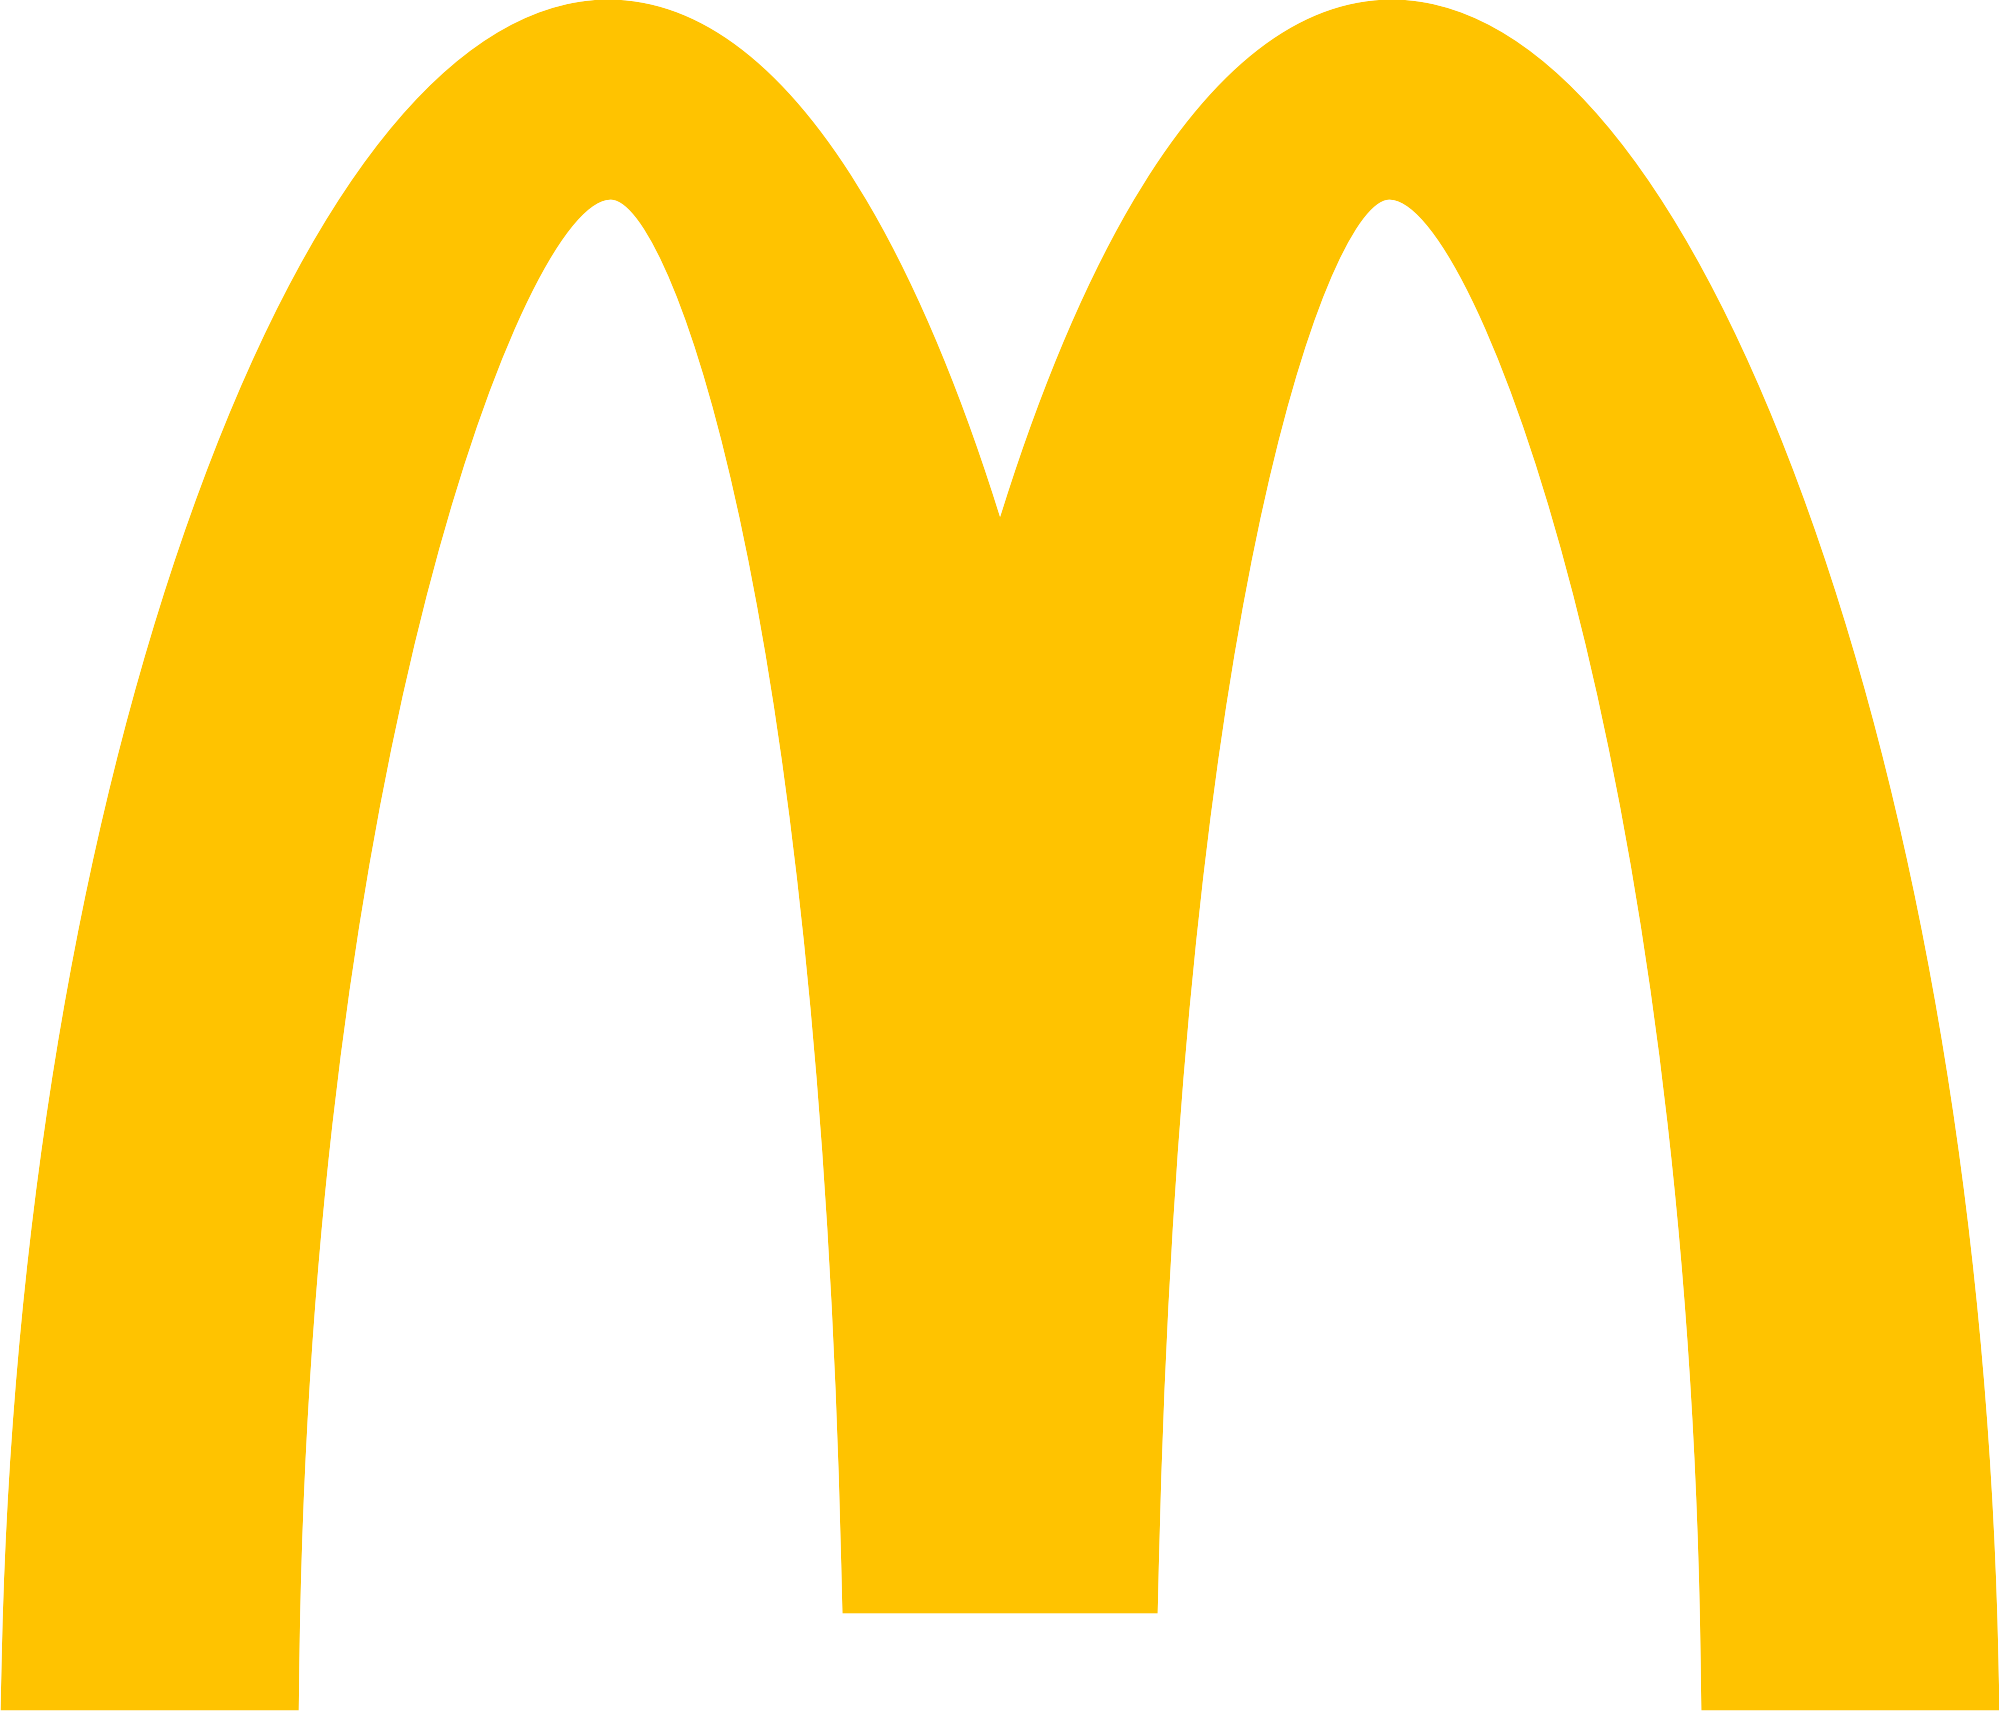 Mcdonalds Logo Png Photos | P